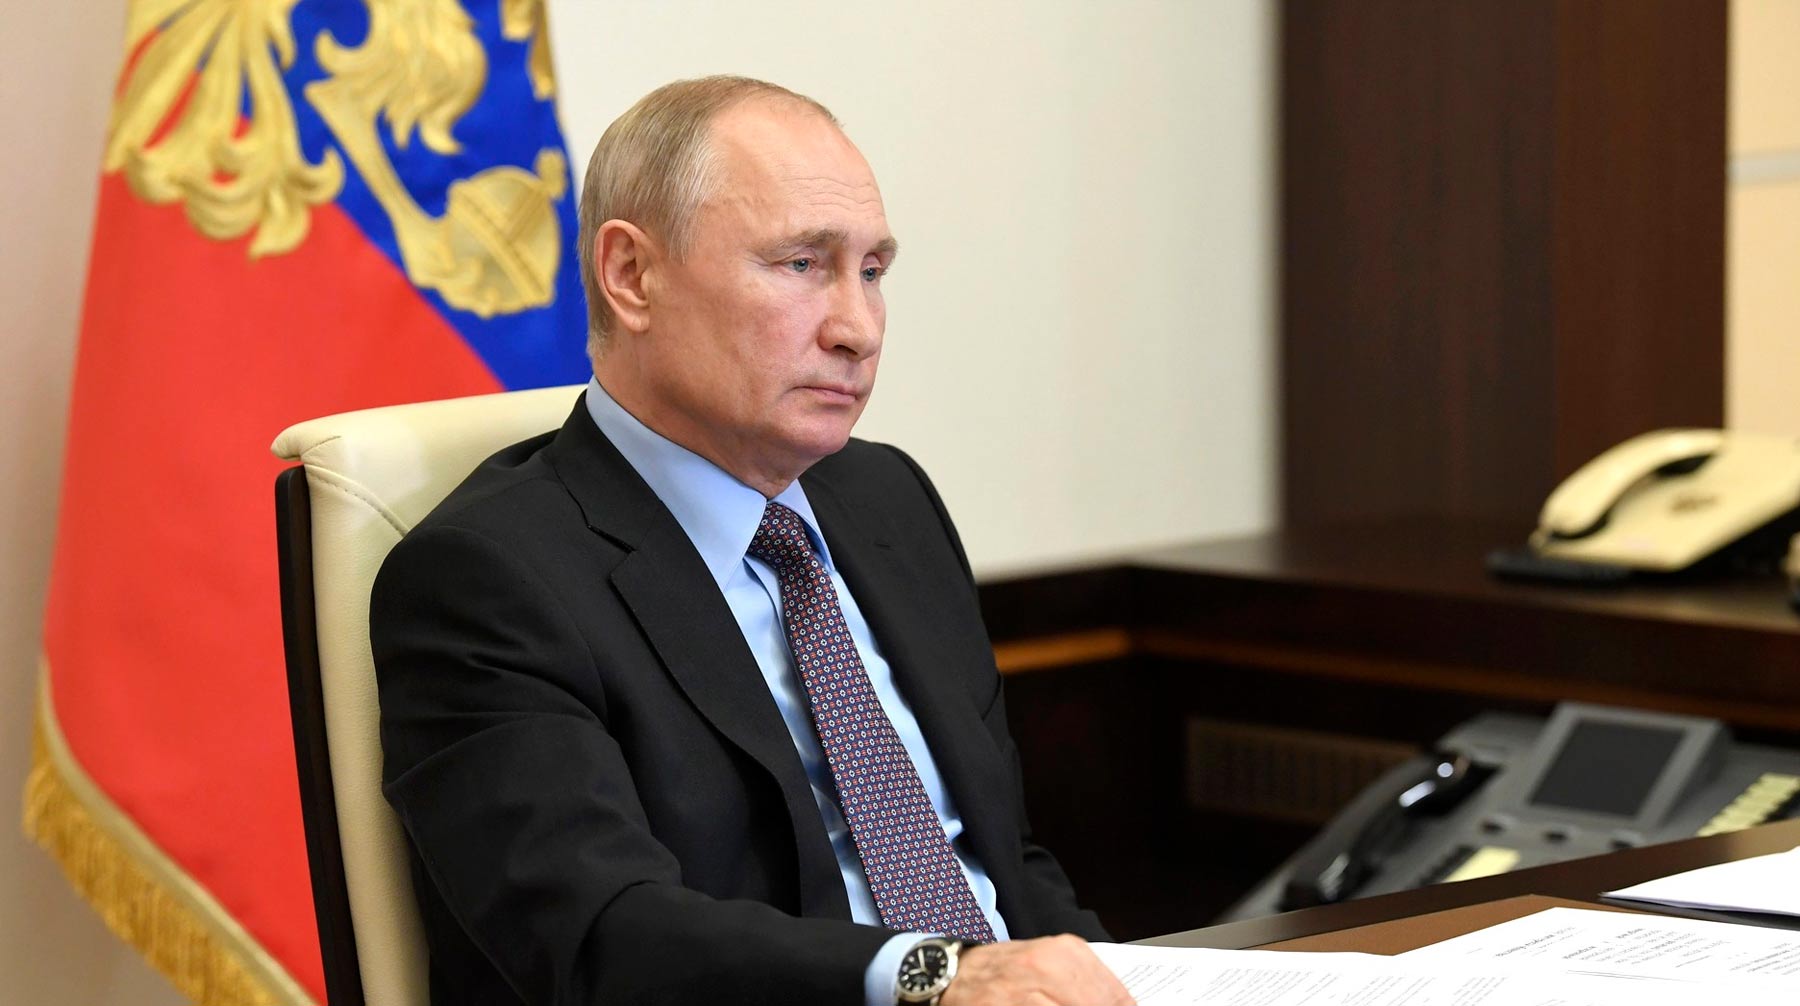 Выступление президента РФ состоится 30 июня около 14:00 мск Фото: © Kremlin Pool